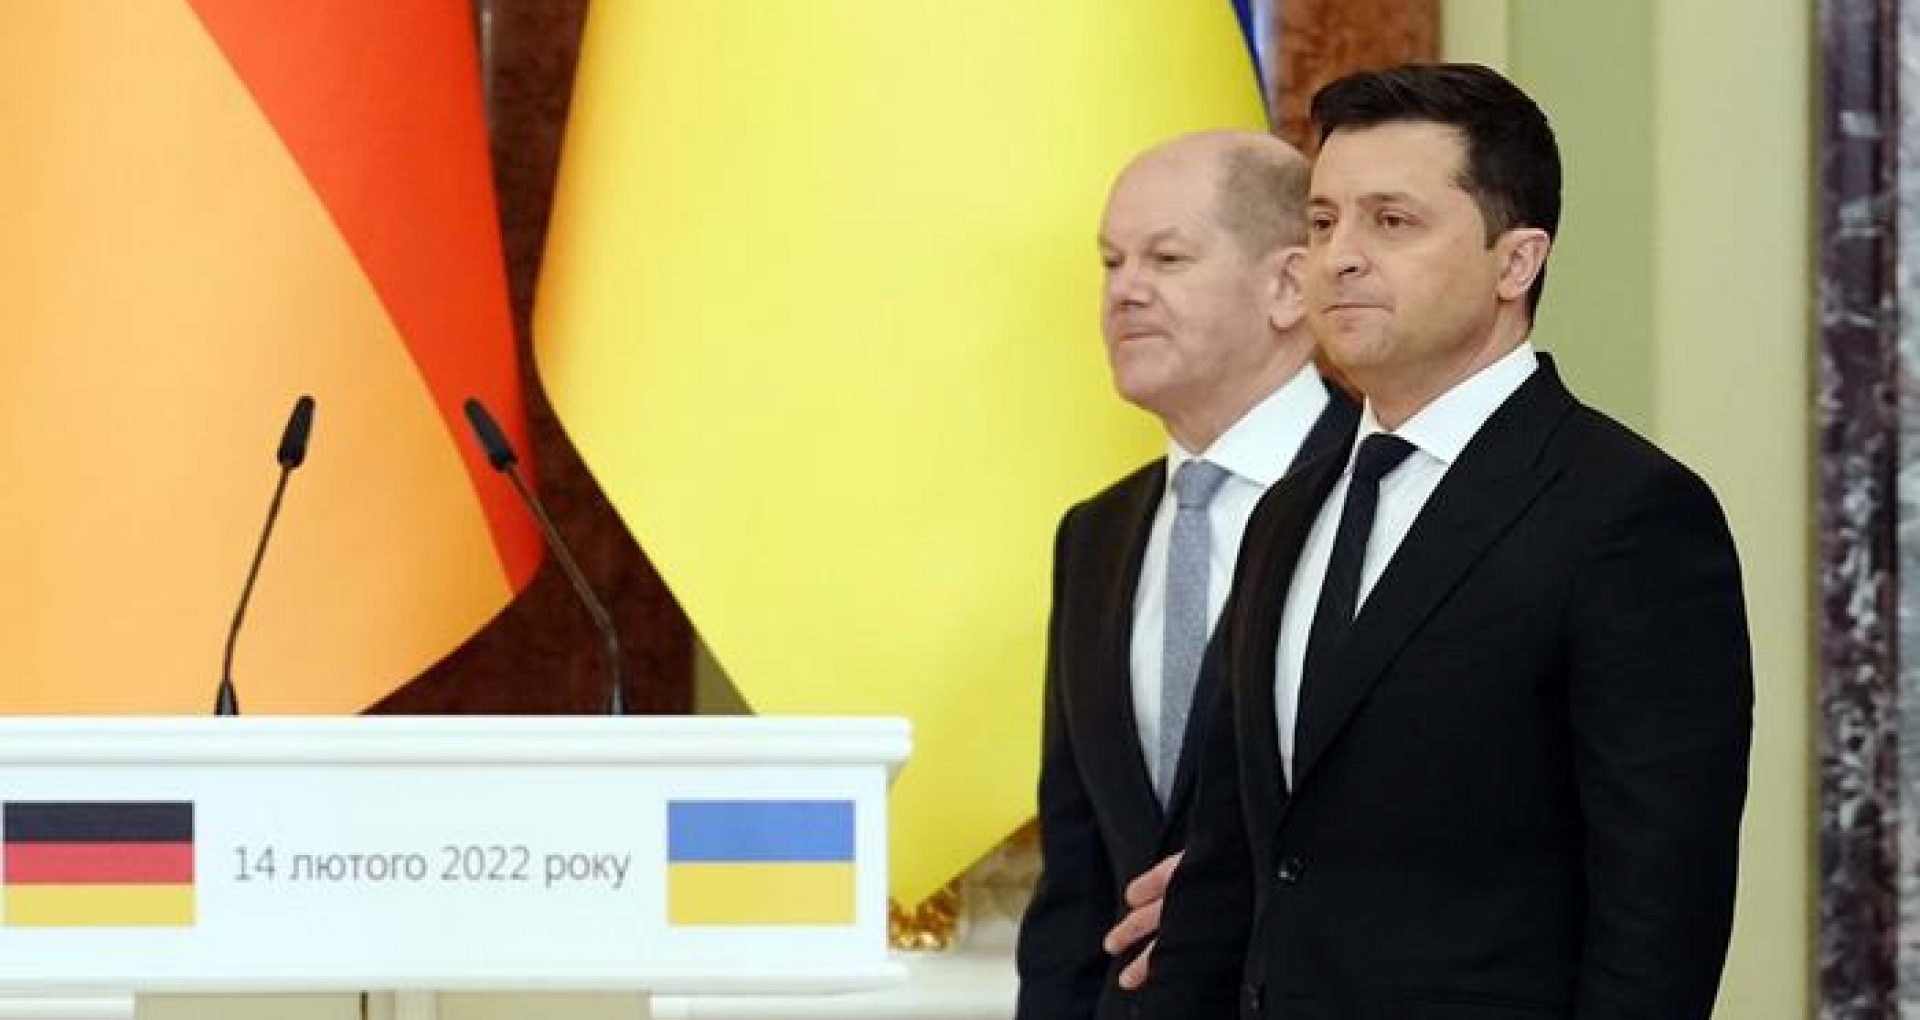 Război în Ucraina, ziua 109. Olaf Scholz va merge la Kiev împreună cu Macron și Draghi, înainte de summitul G7 